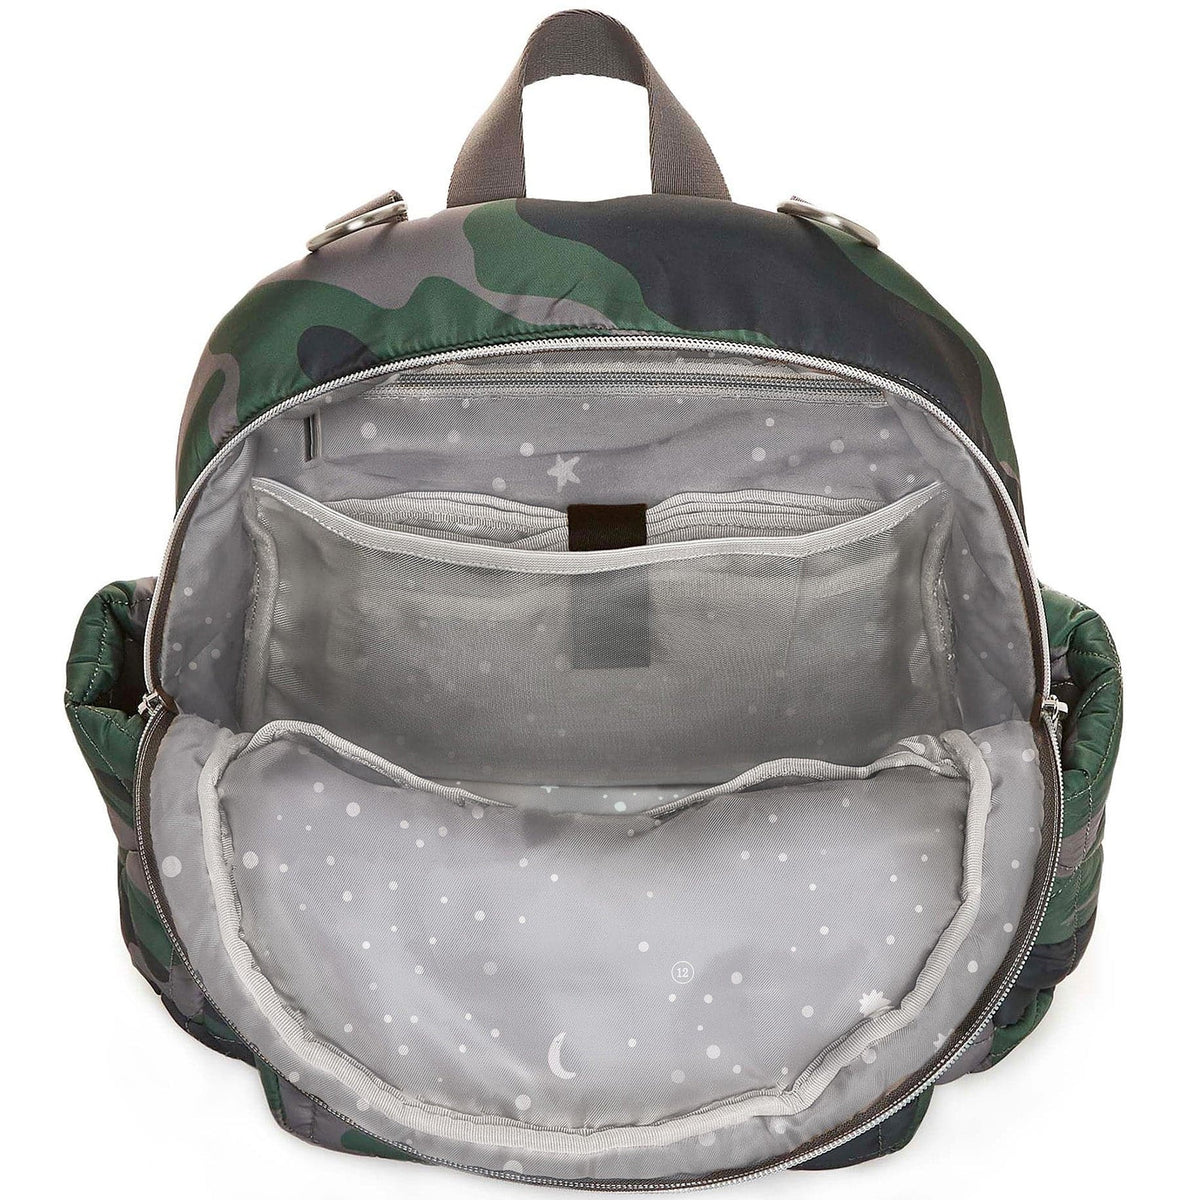 TWELVElittle Little Companion Diaper Bag Backpack